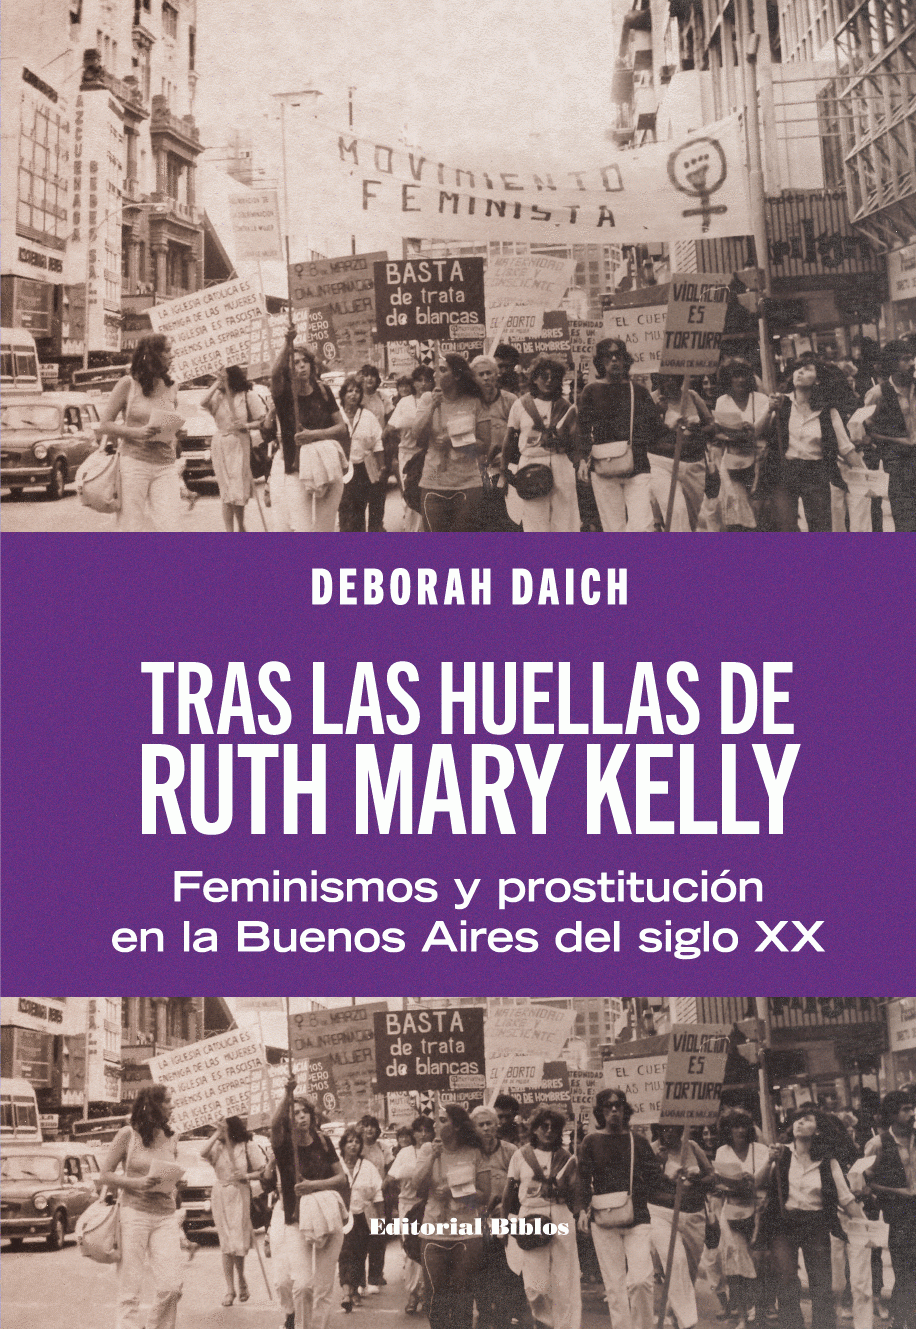 TRAS LAS HUELLAS DE RUTH MARY KELLY. FEMINISMOS Y PROSTITUCIÓN EN LA BUENOS AIRES DEL SIGLO XX